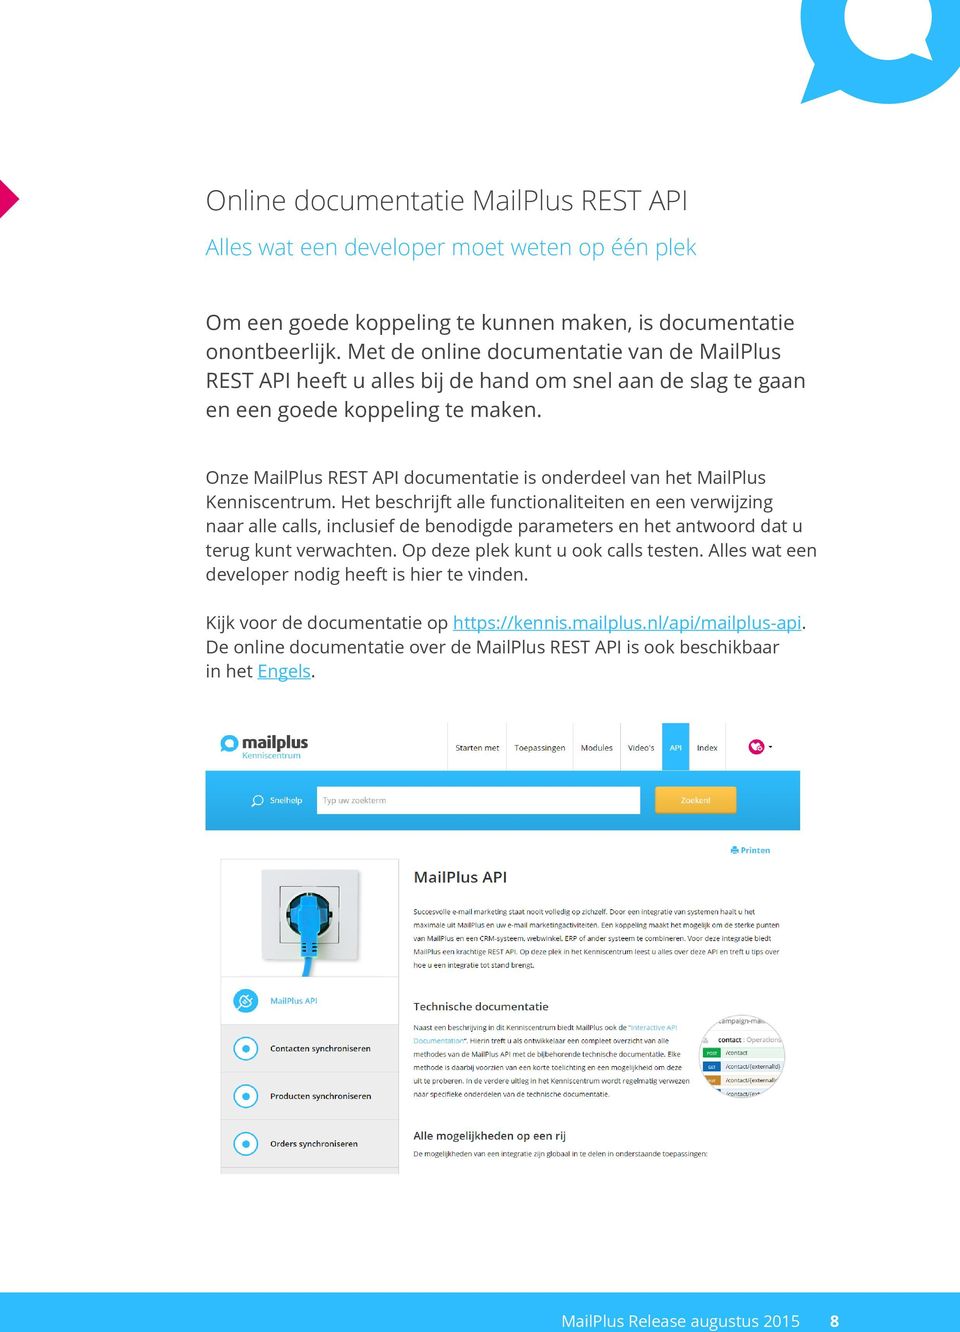 Onze MailPlus REST API documentatie is onderdeel van het MailPlus Kenniscentrum.